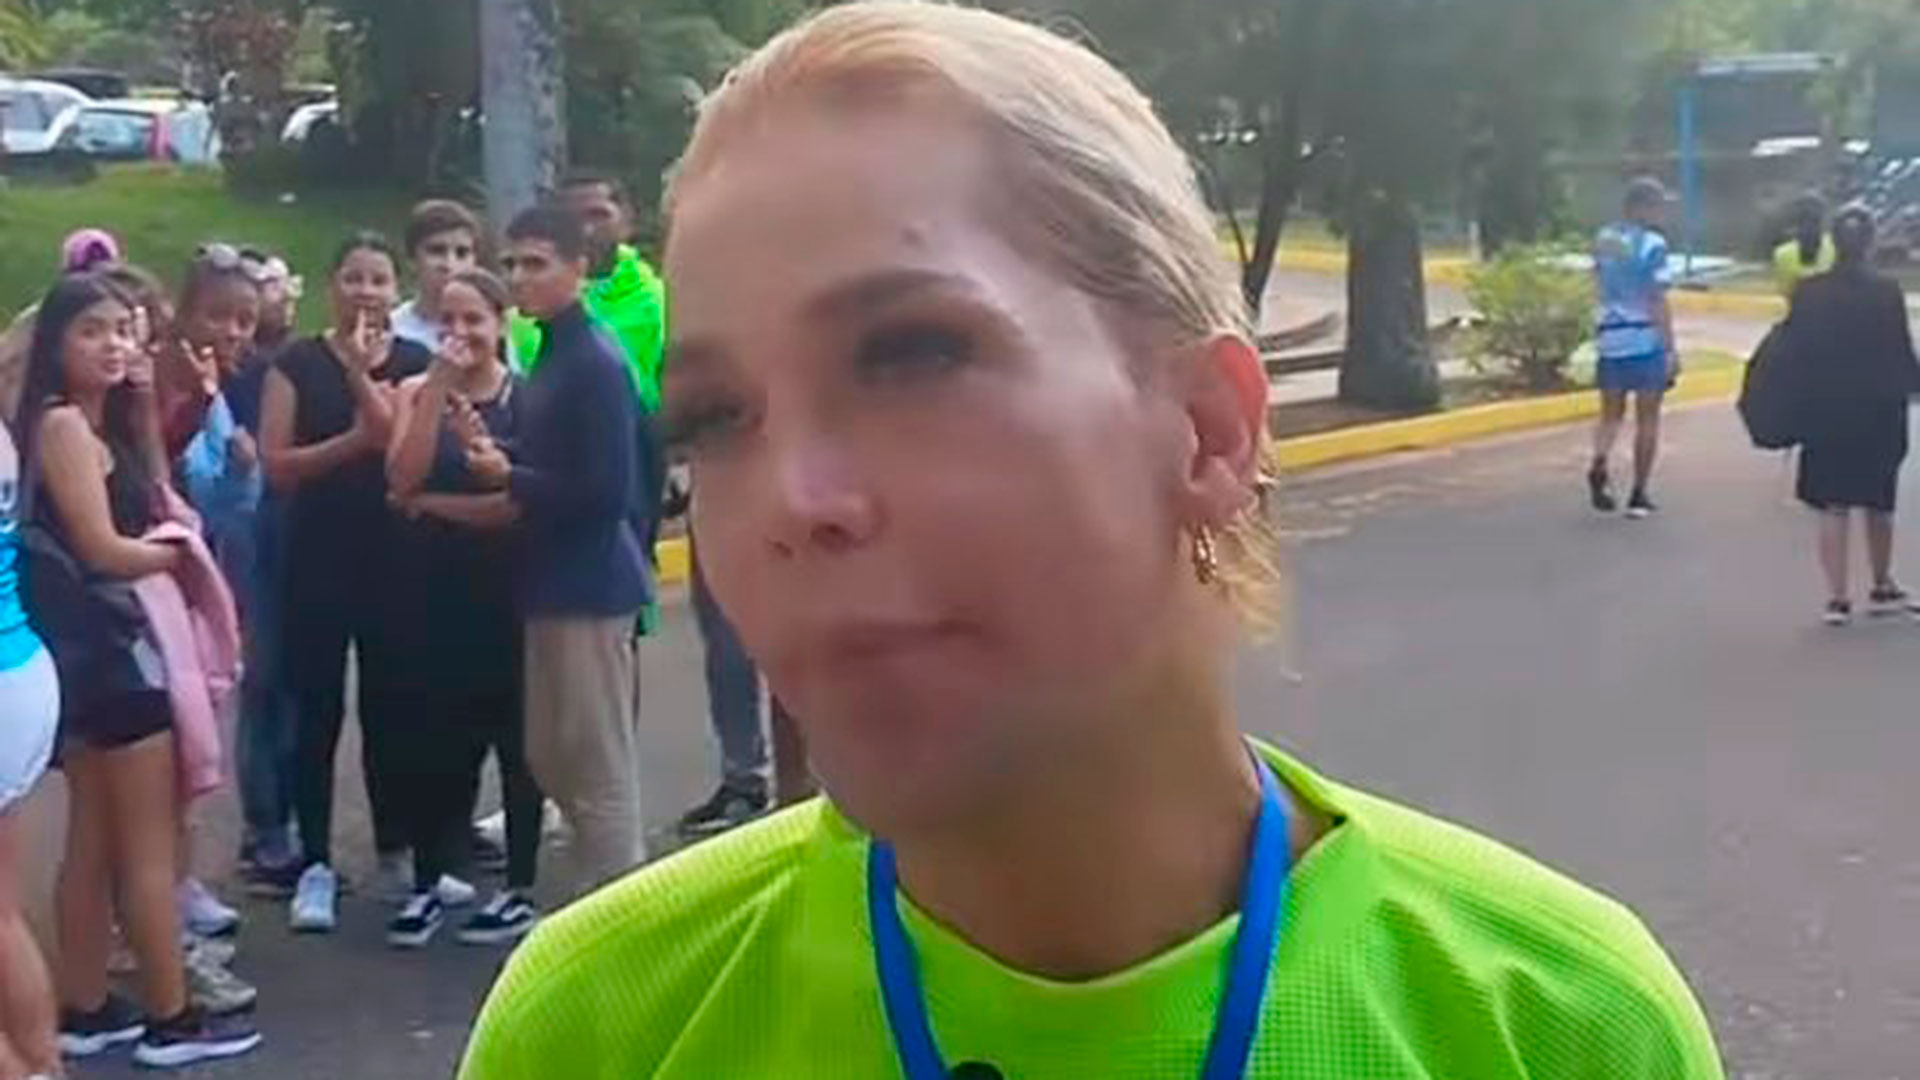 La ONG Somos publicó esta imagen de la deportista Johana Trujillo y denunció discriminación